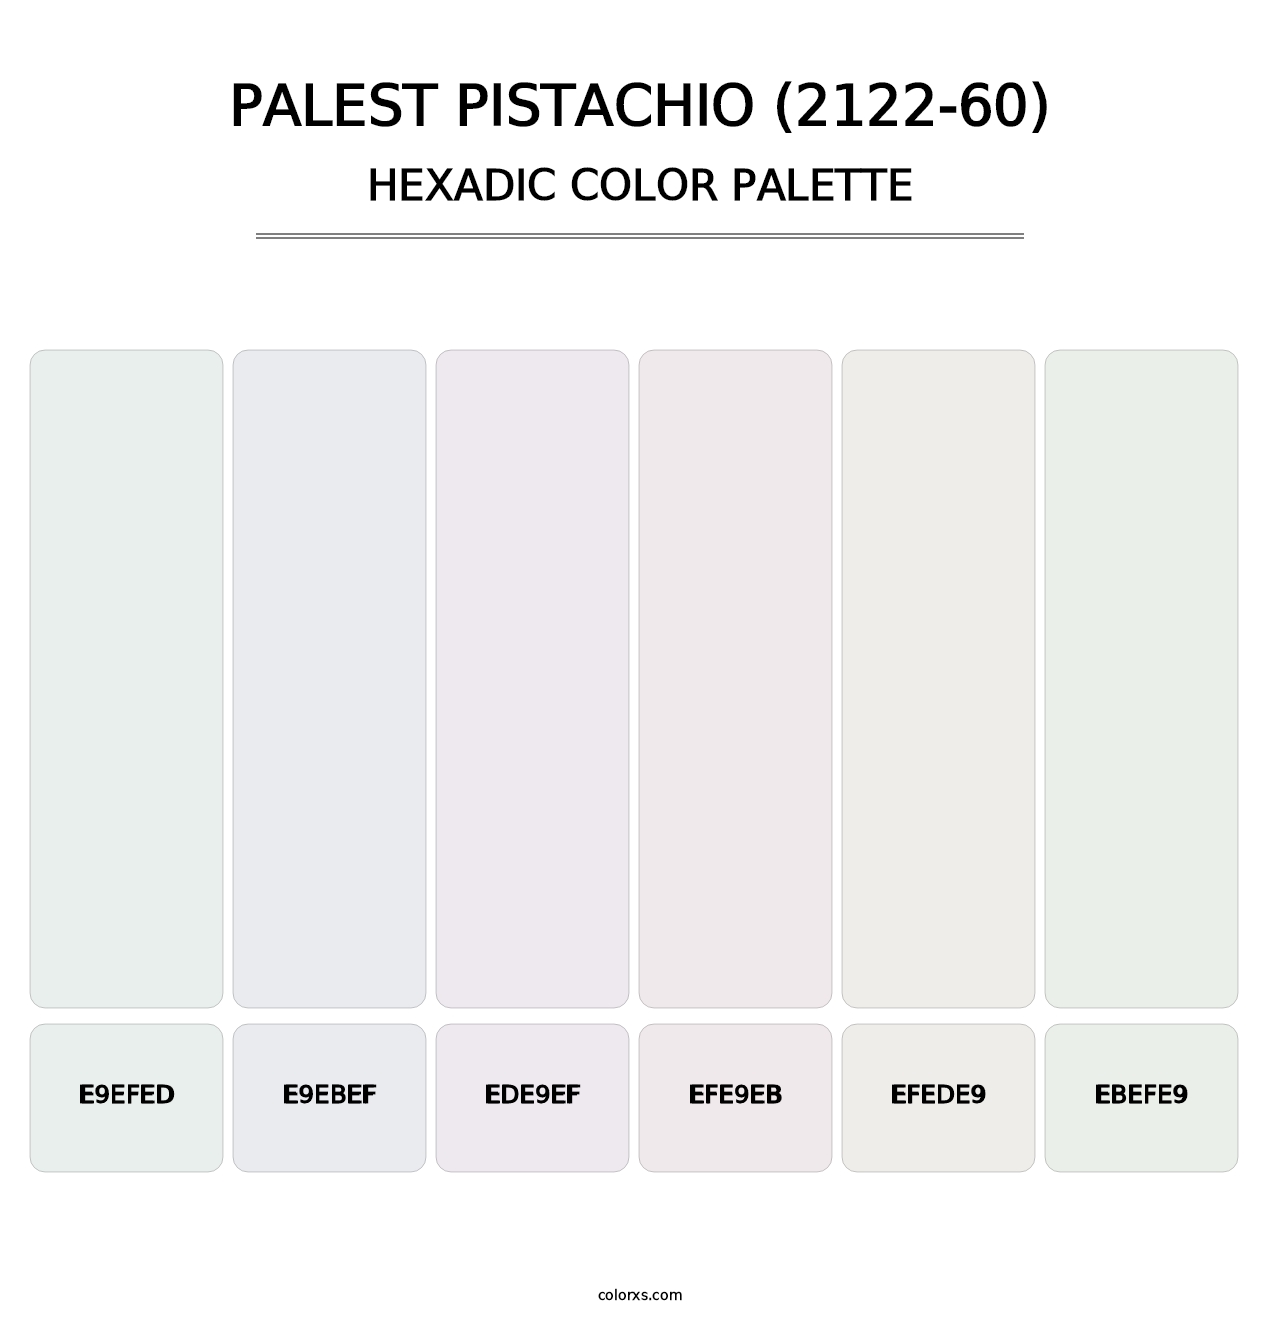 Palest Pistachio (2122-60) - Hexadic Color Palette